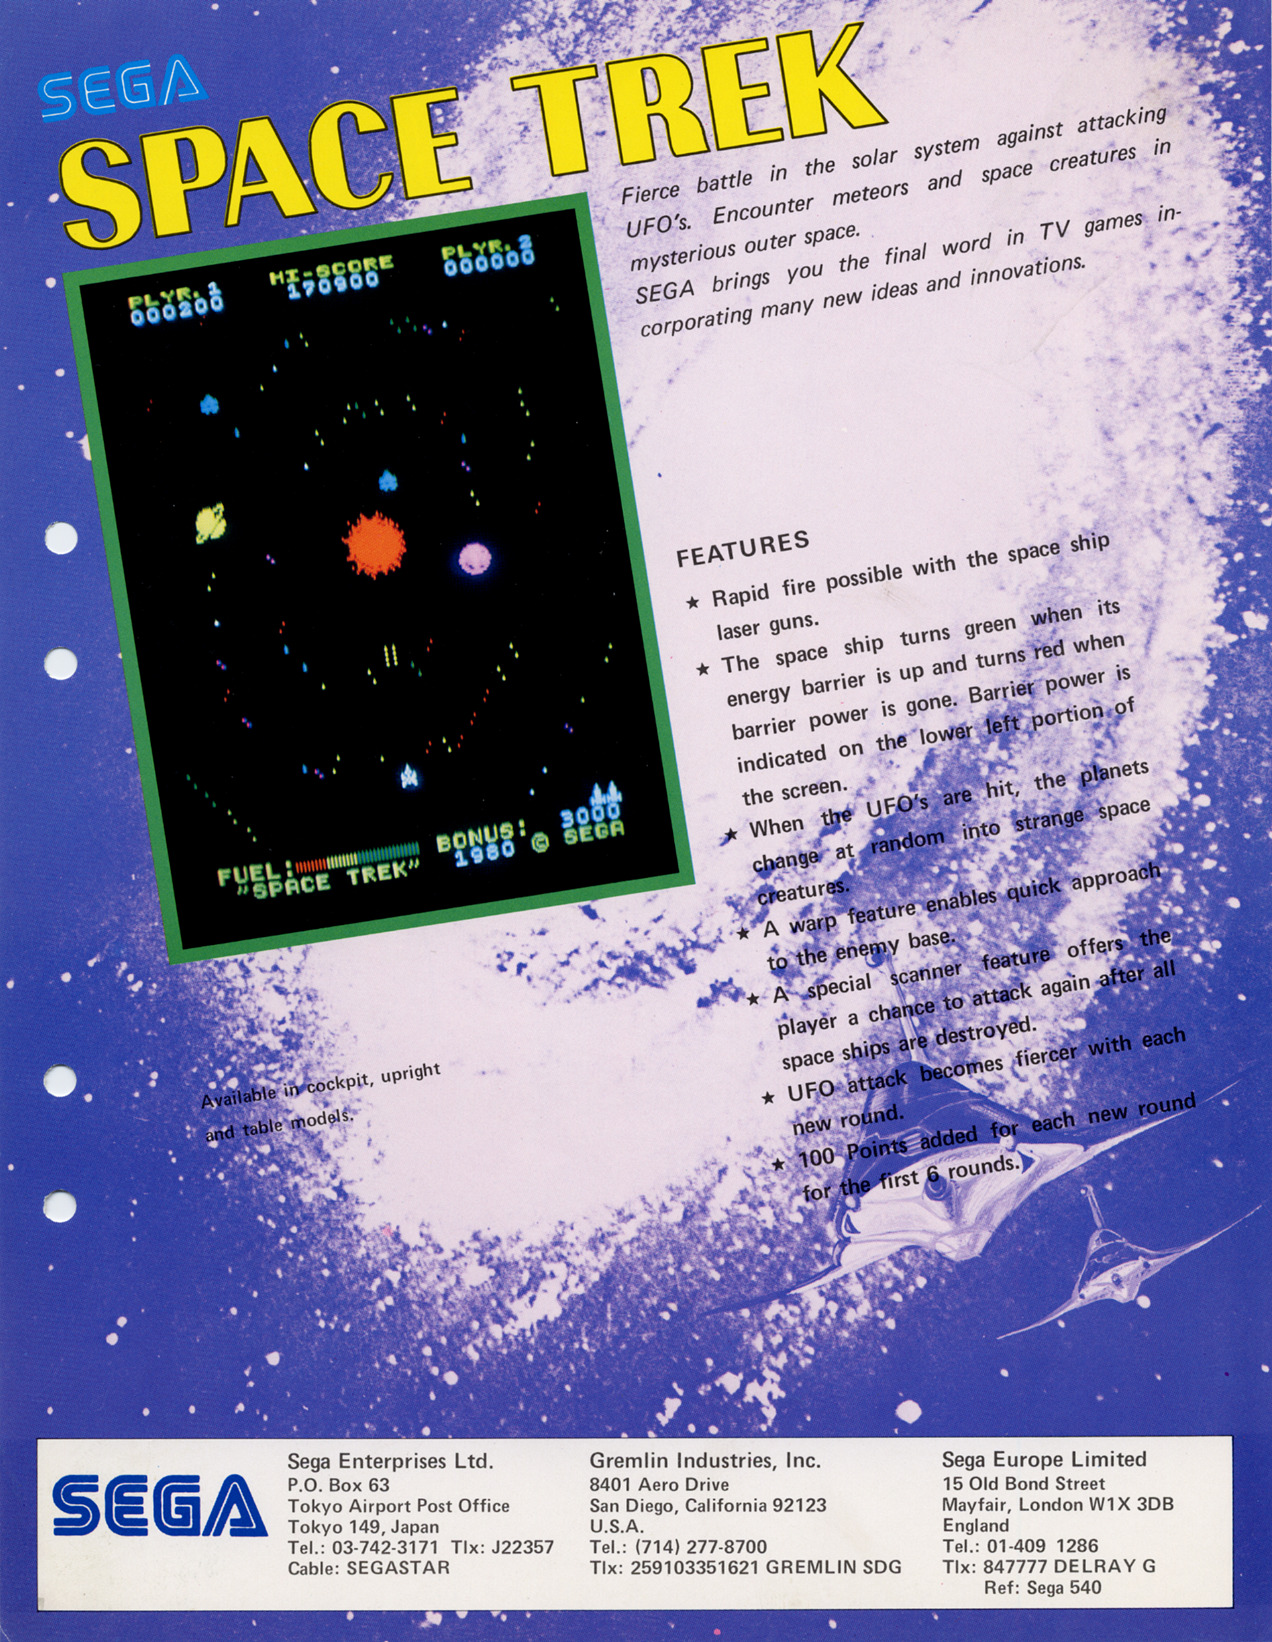 SpaceTrek Arcade US Flyer.jpg